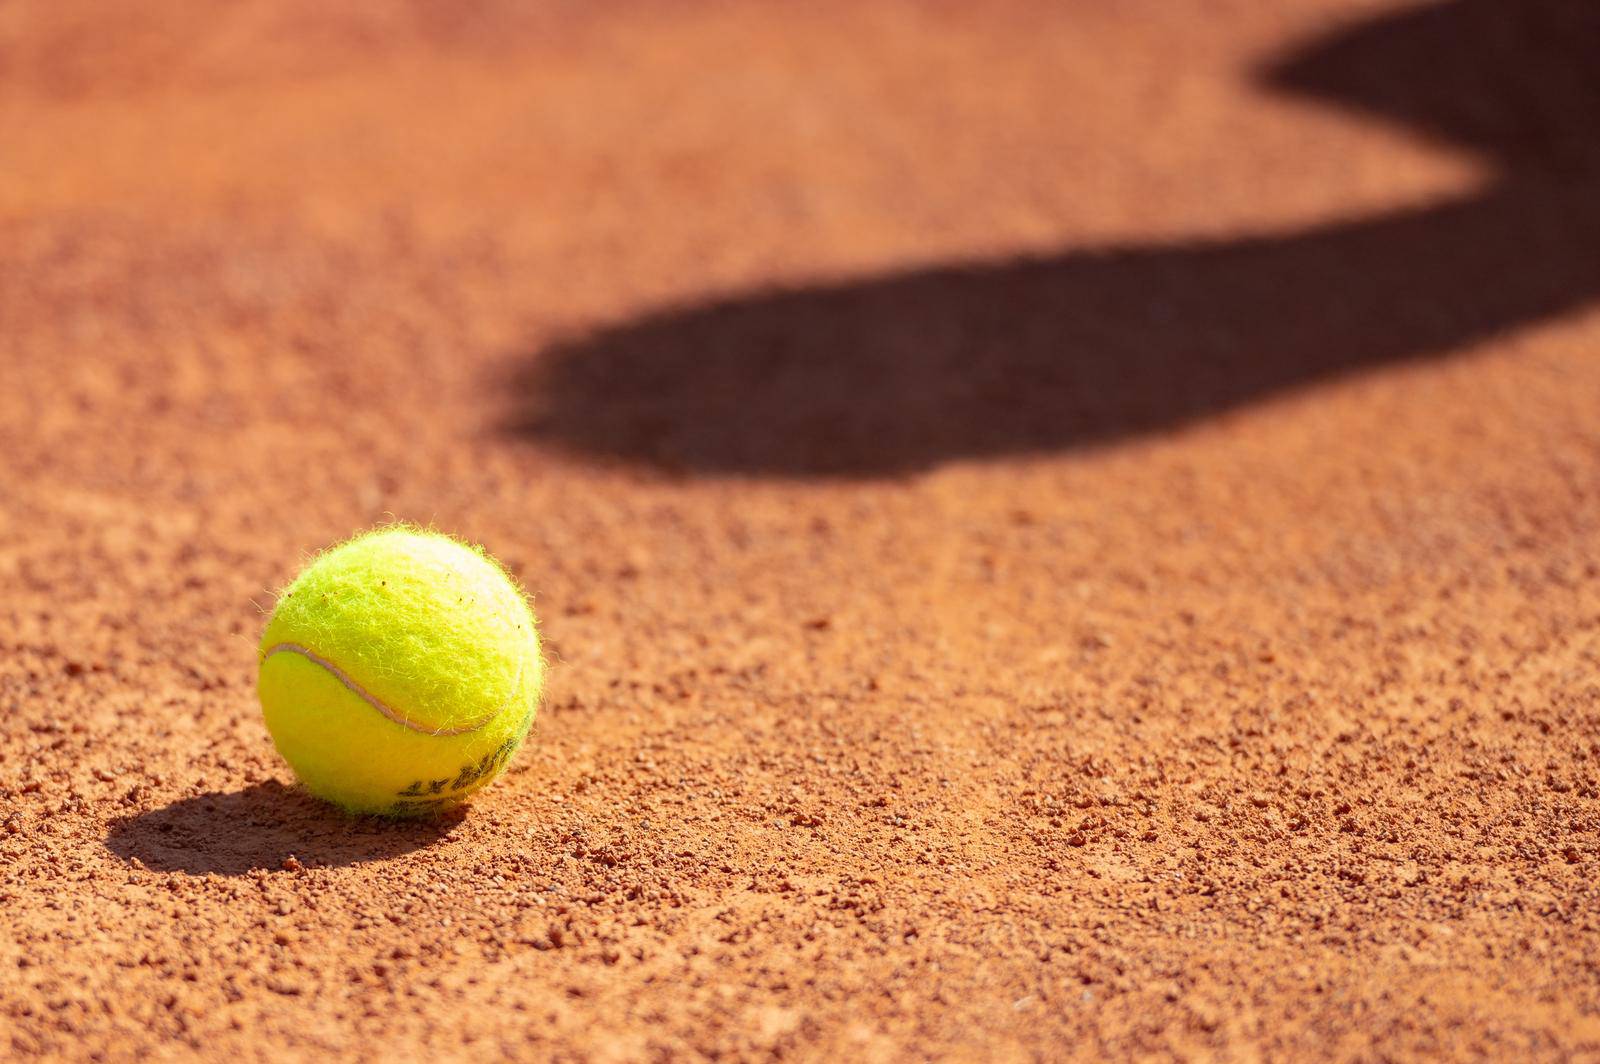 U Novalji se održava teniski turnir rekreativaca Stars Open Tour